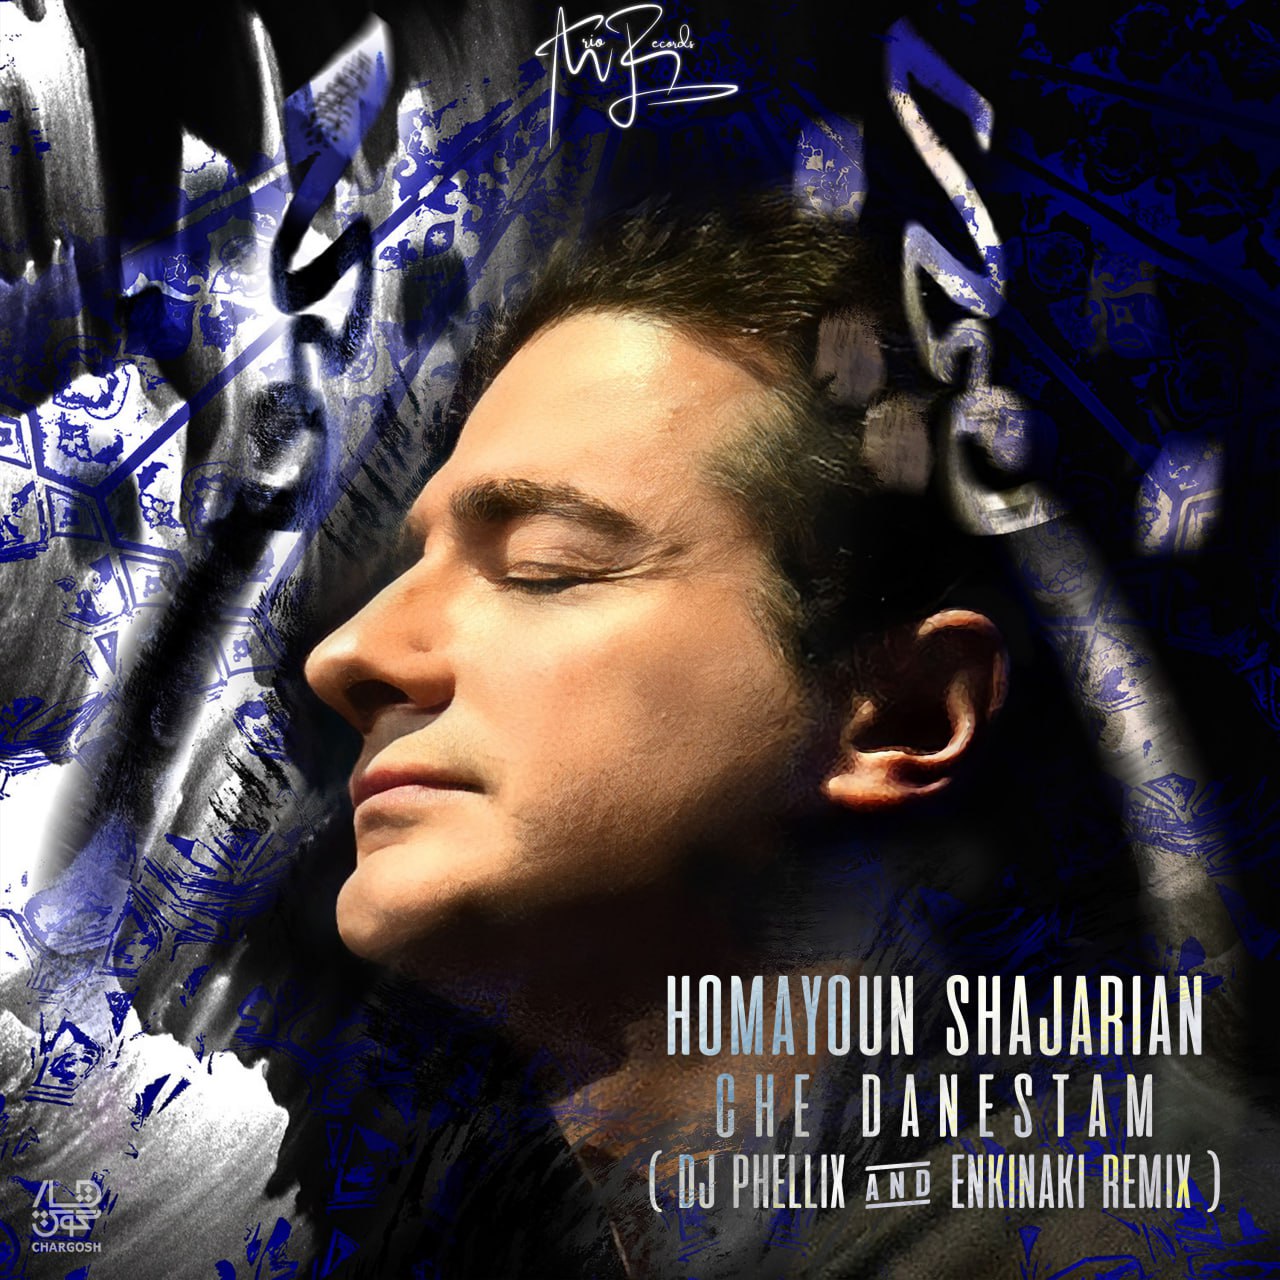 Homayoun Shajarian – Che Danestam ( DJ Phellix And Enkinaki Remix )